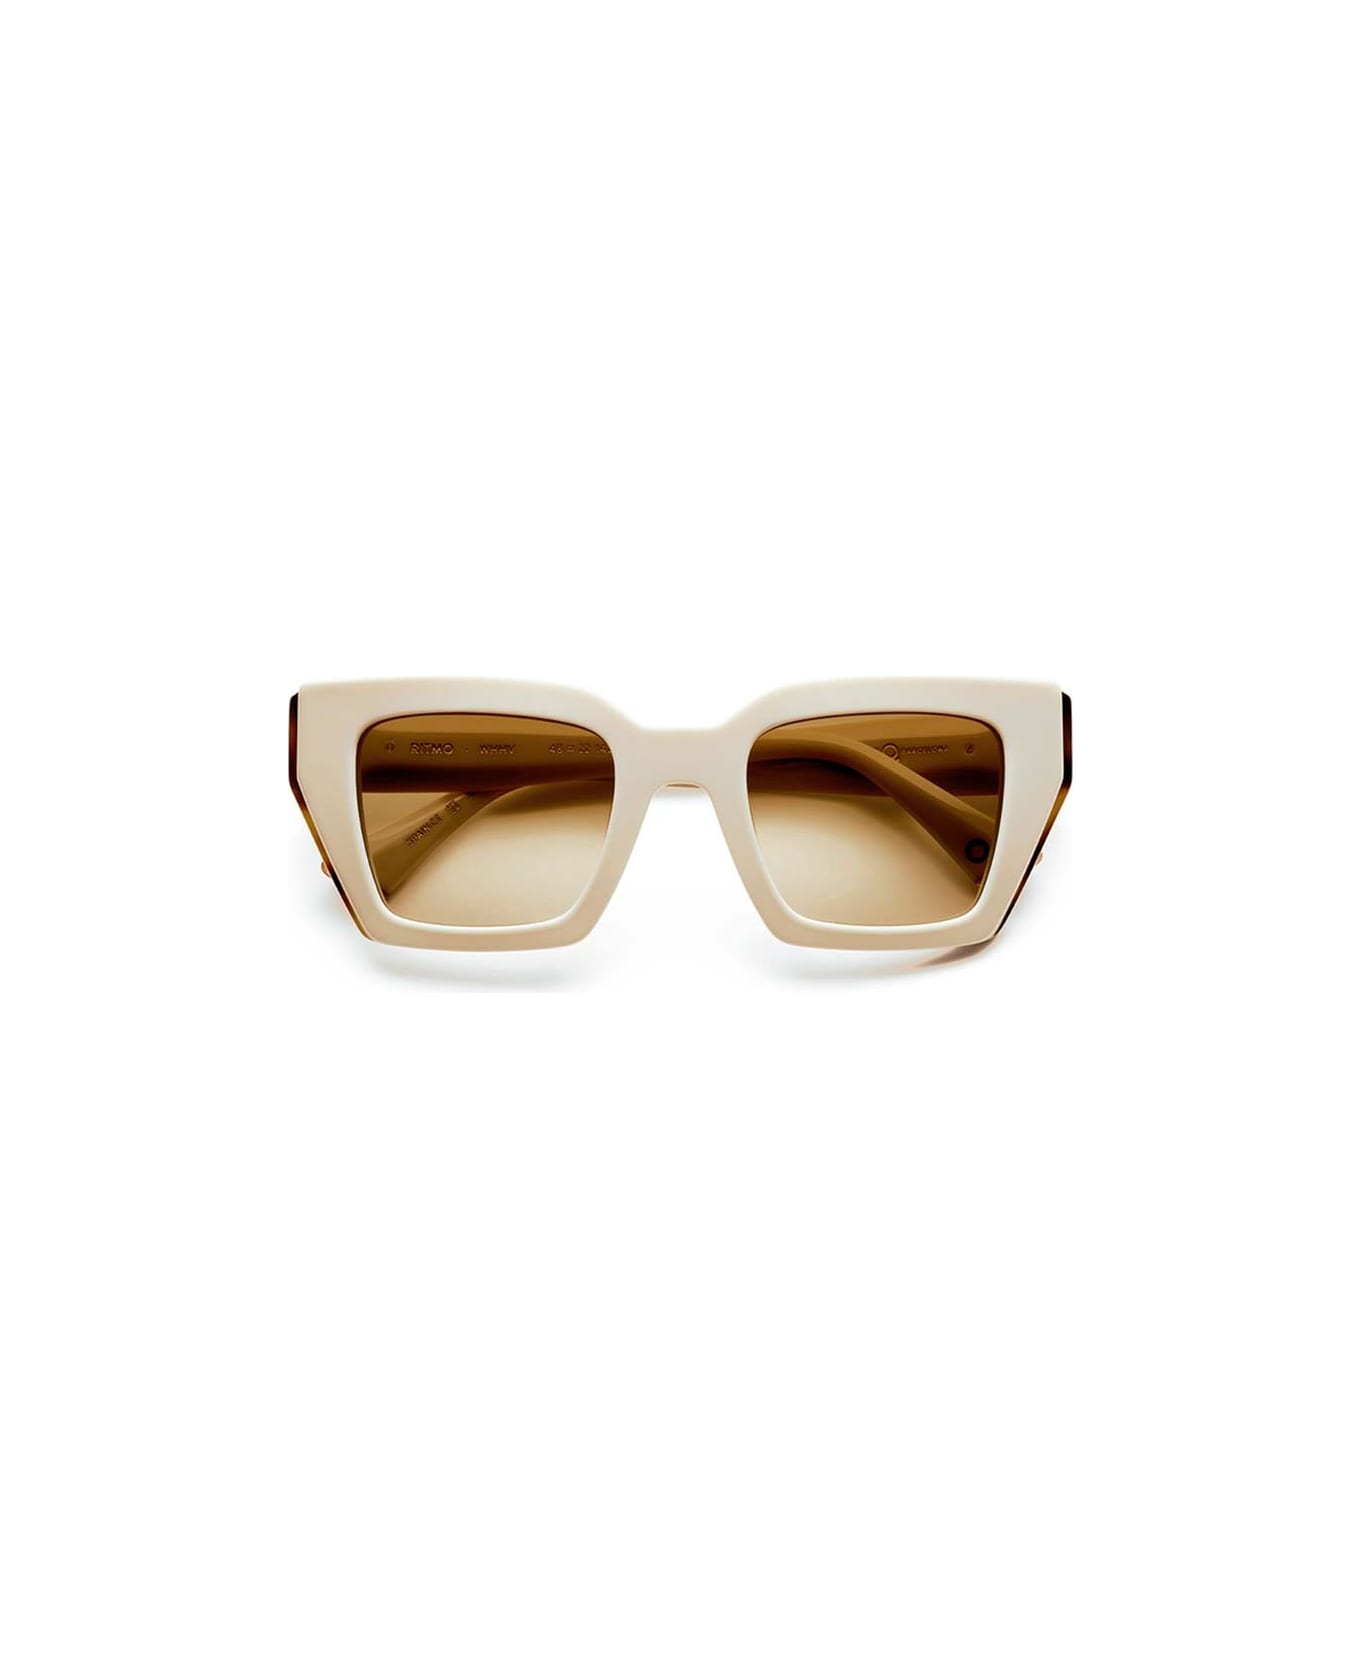 Etnia Barcelona Sunglasses - Avorio/Marrone sfumato